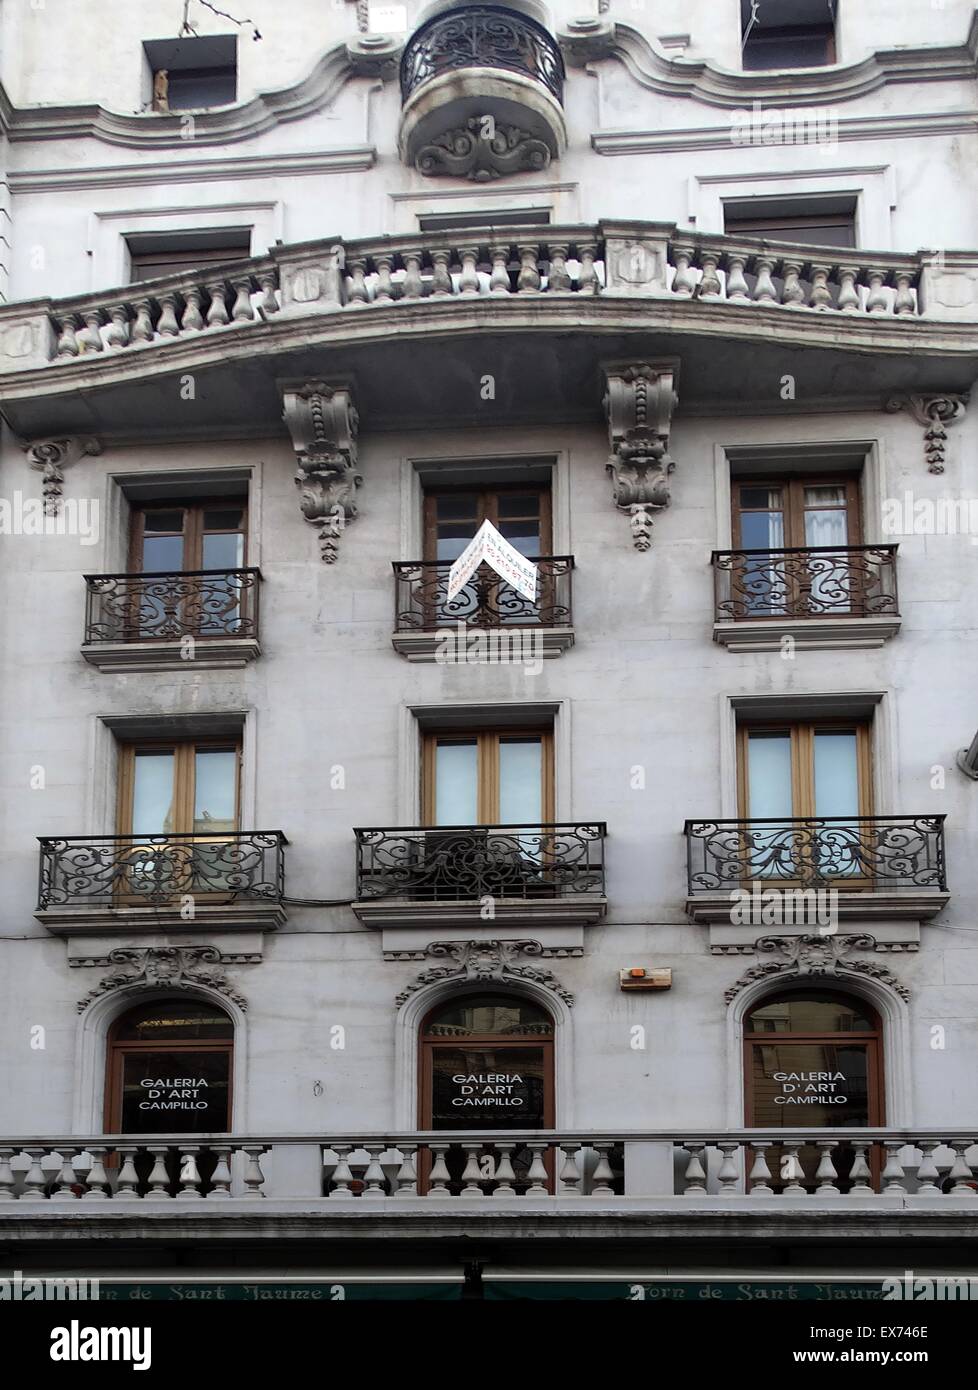 Façade d'appartements datant du début du xxe siècle, Barcelone, Espagne Banque D'Images